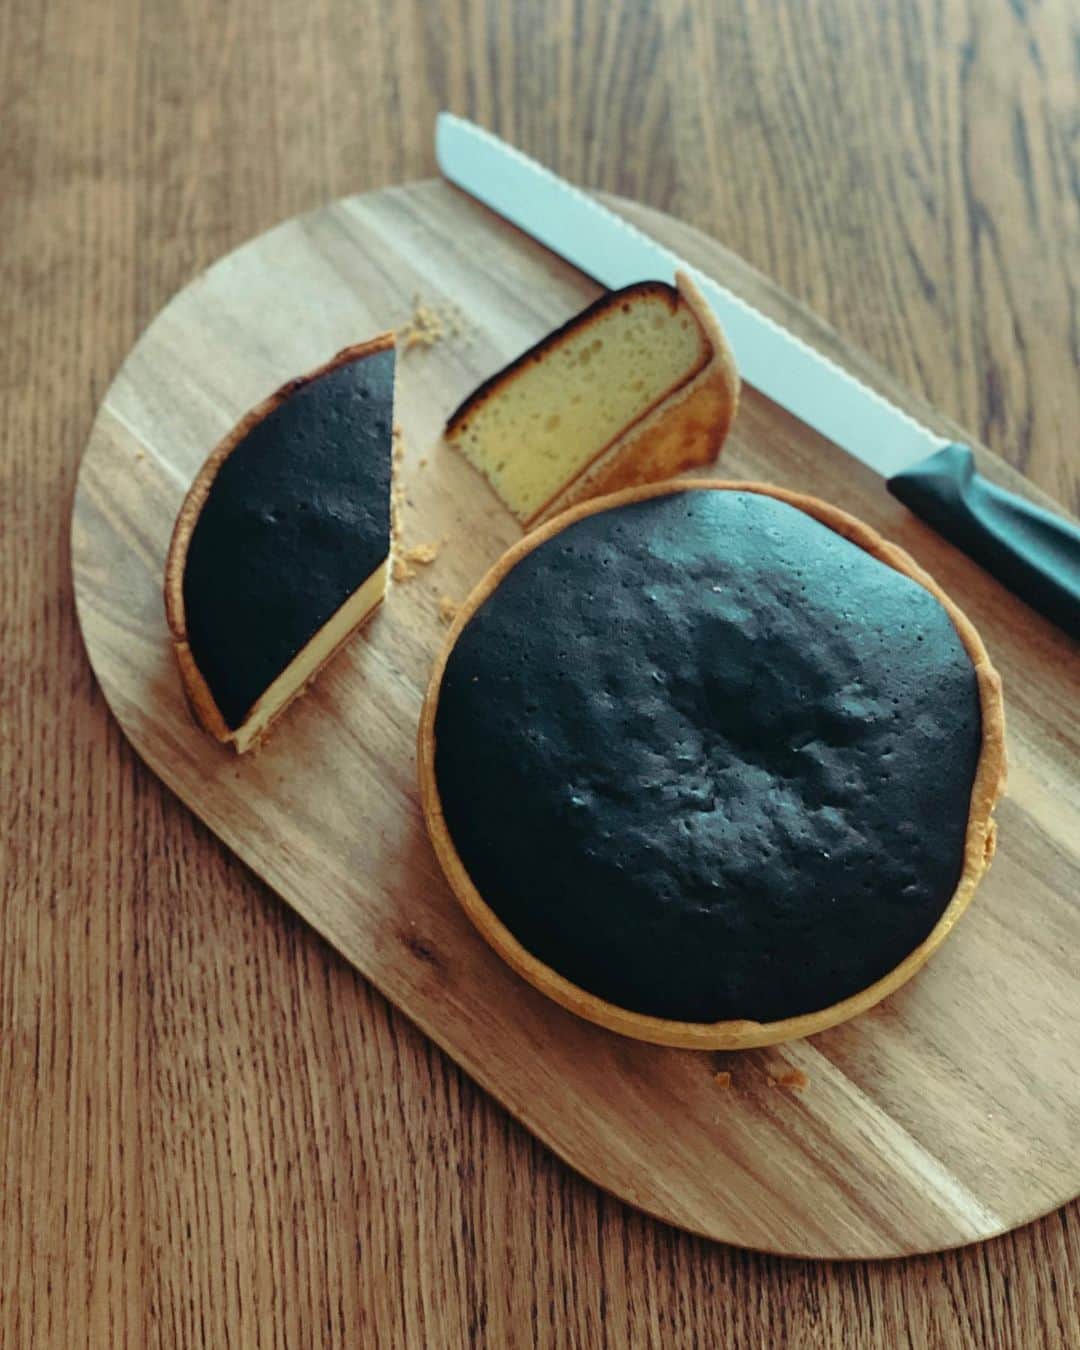 EMOJOIE CUISINEのインスタグラム：「YouTubeに新しい動画を投稿しました。  フランスにはトゥルトーフロマジェという不思議なチーズケーキがあるんです。  見た目が真っ黒に焦げていて食べれるのか心配なるお菓子。  焦げていても決して苦くはない。 ただ、ヤギのチーズを使うので少しクセがあり、苦手な人は苦手かもしれません。  ヤギではなく牛のミルクのフレッシュチーズやクリームチーズなどでも作れますから好みに合わせて置き換えてもいいですね。  バスチーの次のチーズケーキはこれかな？ トゥルトーフロマジェ流行るかなぁ〜  #お菓子作り #クッキンググラム #デリスタグラマ #おうちカフェ  #foodgasm  #foodpics  #instafood  #cookingram #homemade #delistagrammer  #チーズケーキ #cheesecake  #バスチー #トゥルトーフロマジェ」